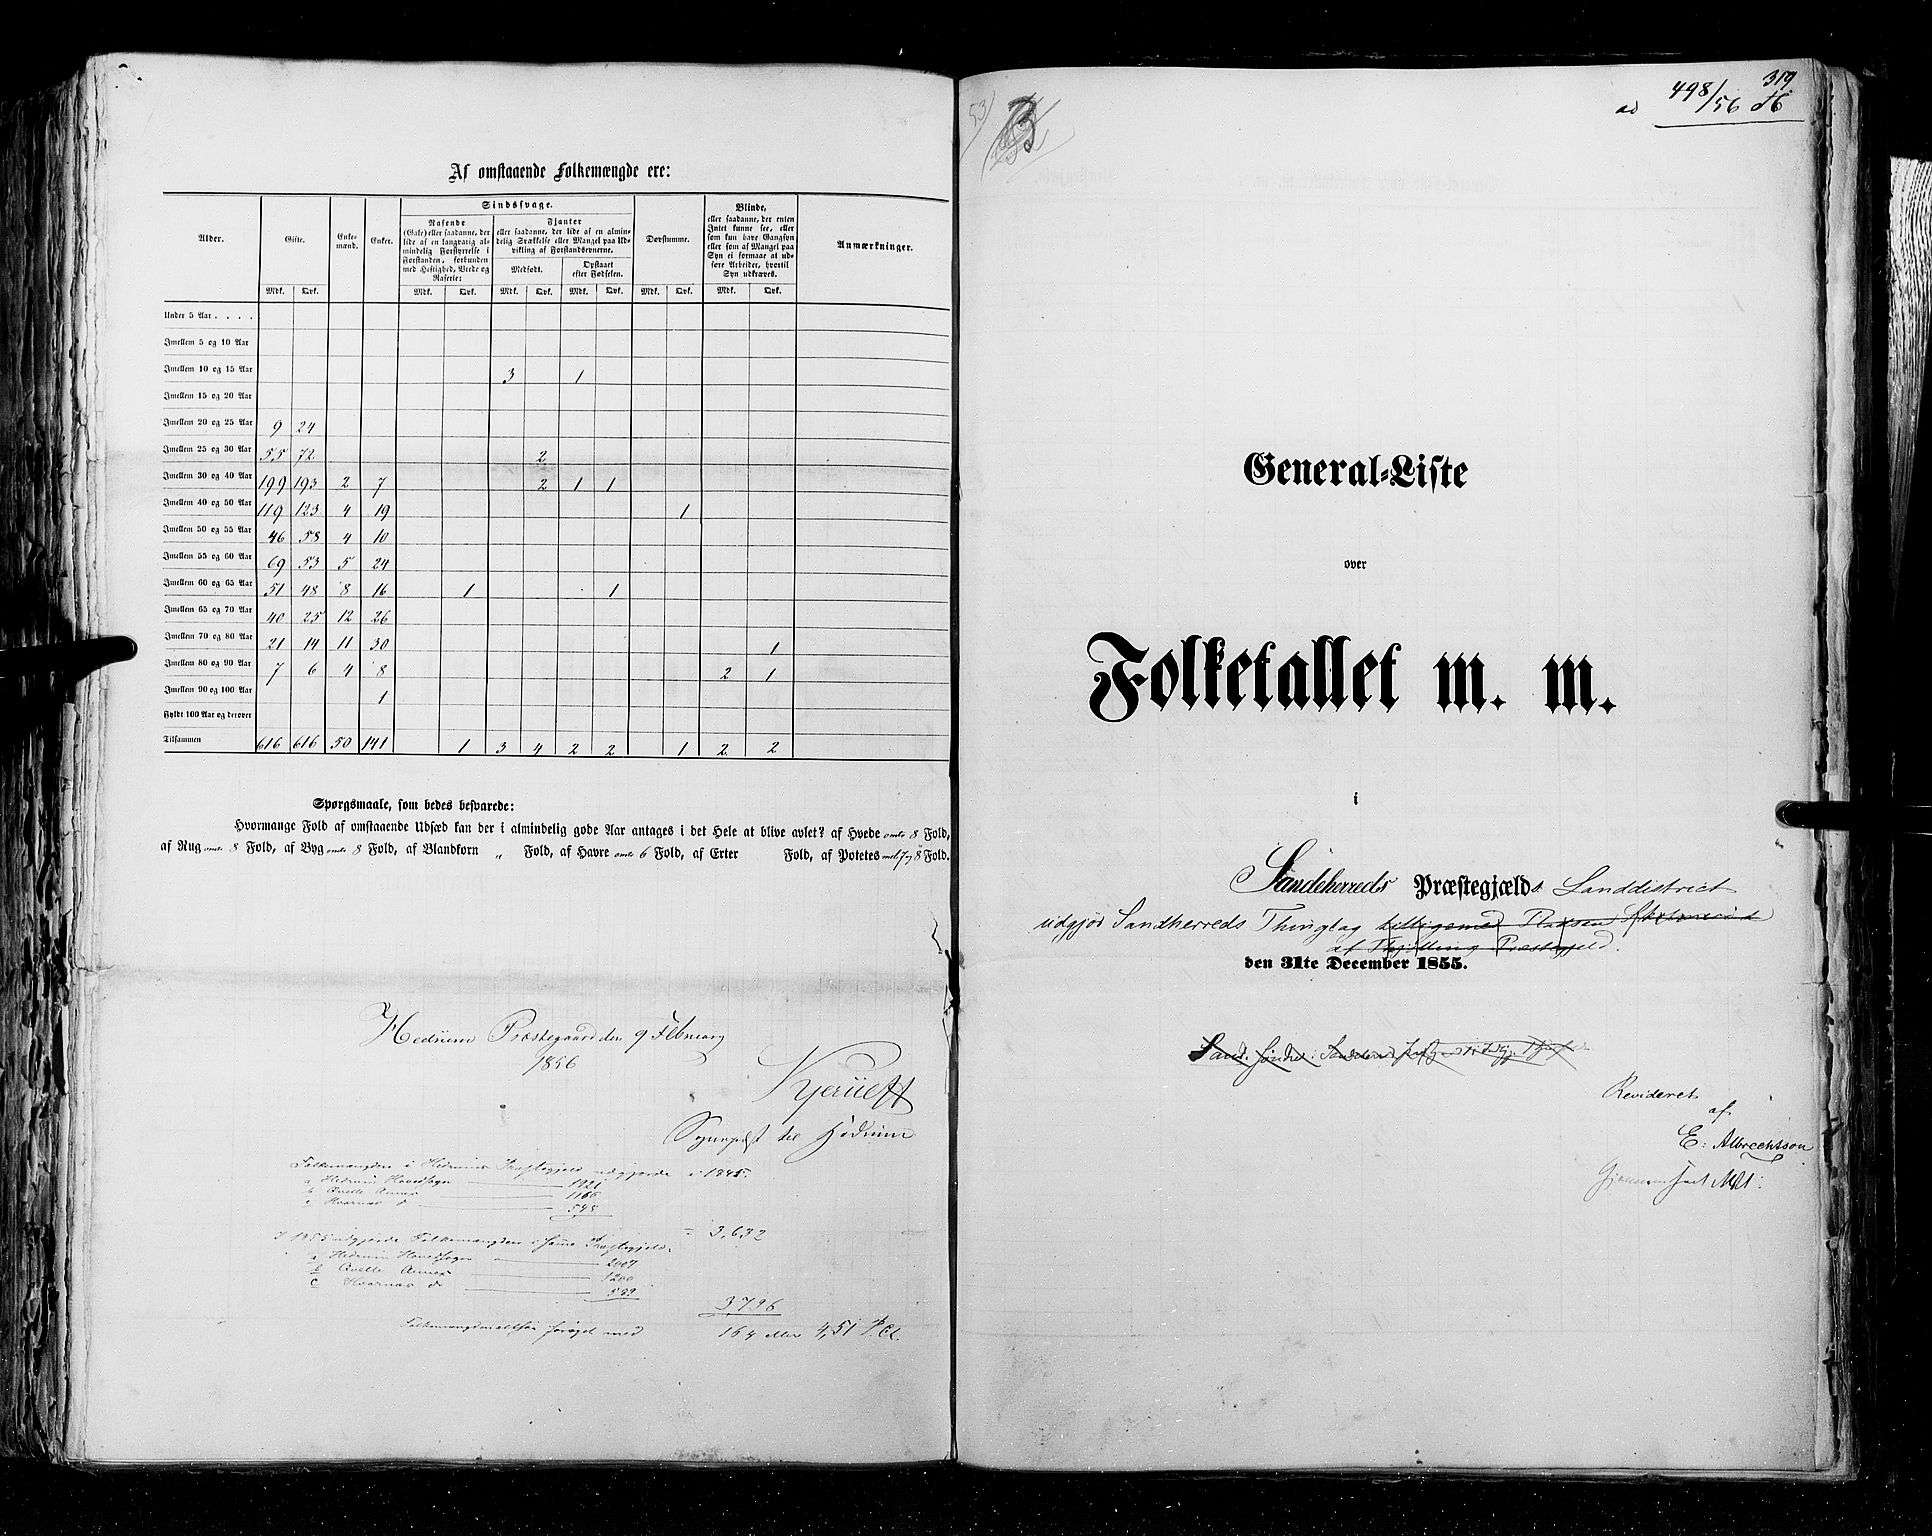 RA, Census 1855, vol. 2: Kristians amt, Buskerud amt og Jarlsberg og Larvik amt, 1855, p. 319